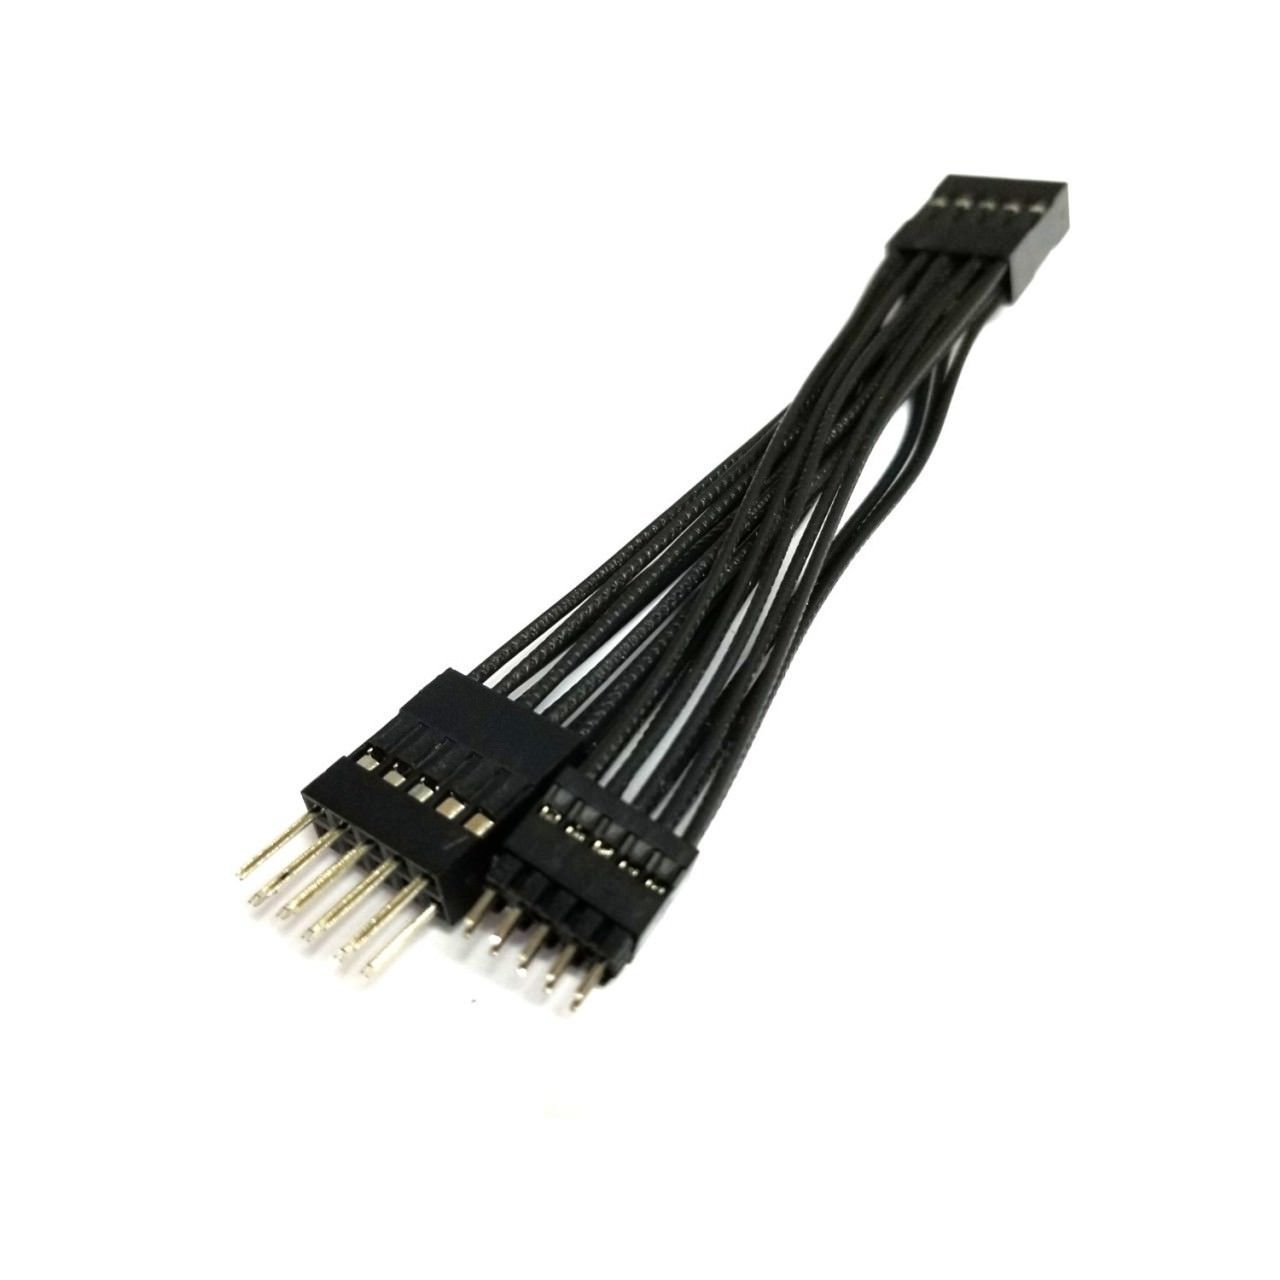 Lignende Sandsynligvis Fordøjelsesorgan Internal USB 2.0mm and 2.54mm 10 Pin Header Male Splitter Cable 5cm  MDY-CO356